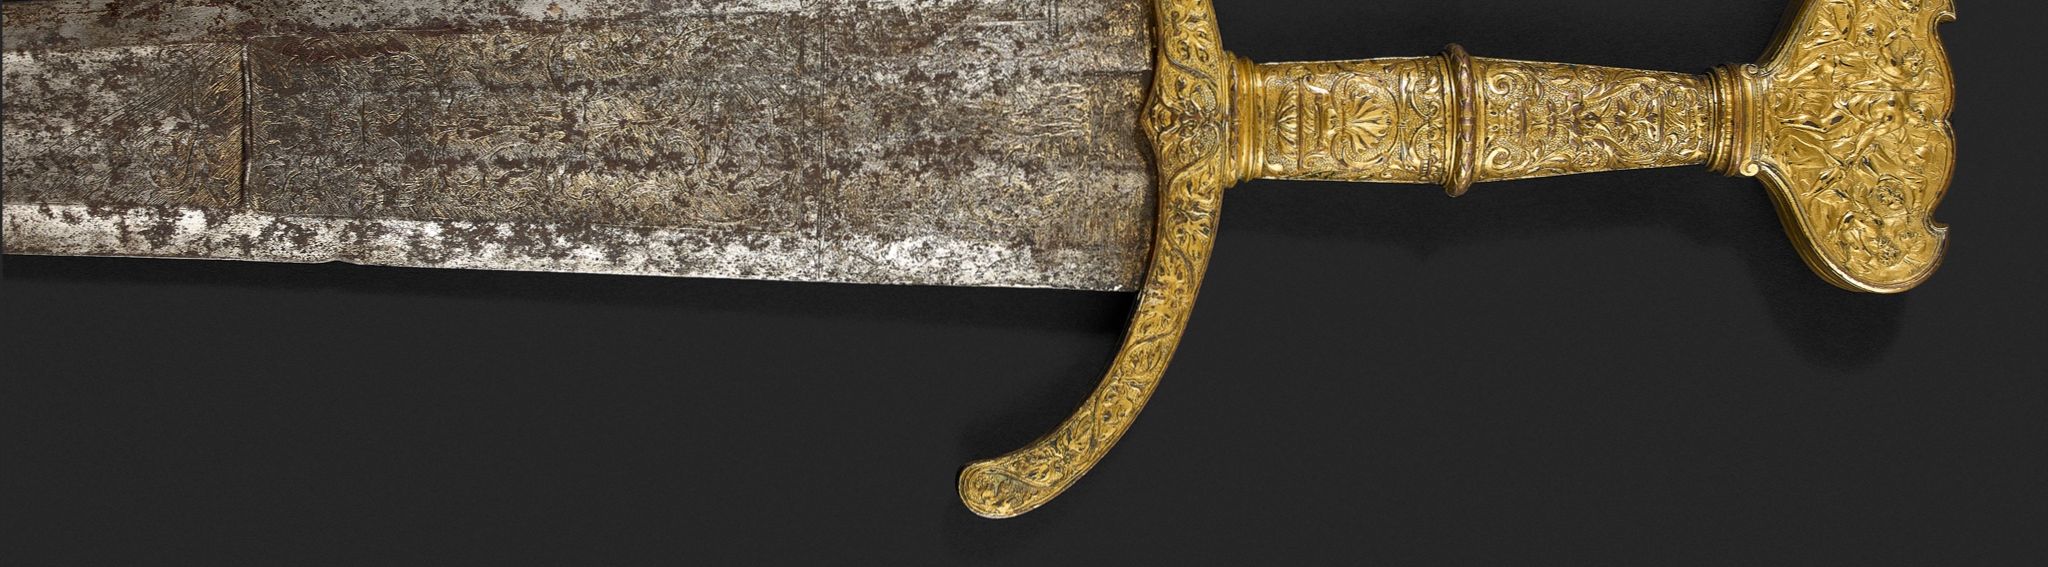 Rare épée nobiliaire de présent ou d'apparat de type Cinquedea.